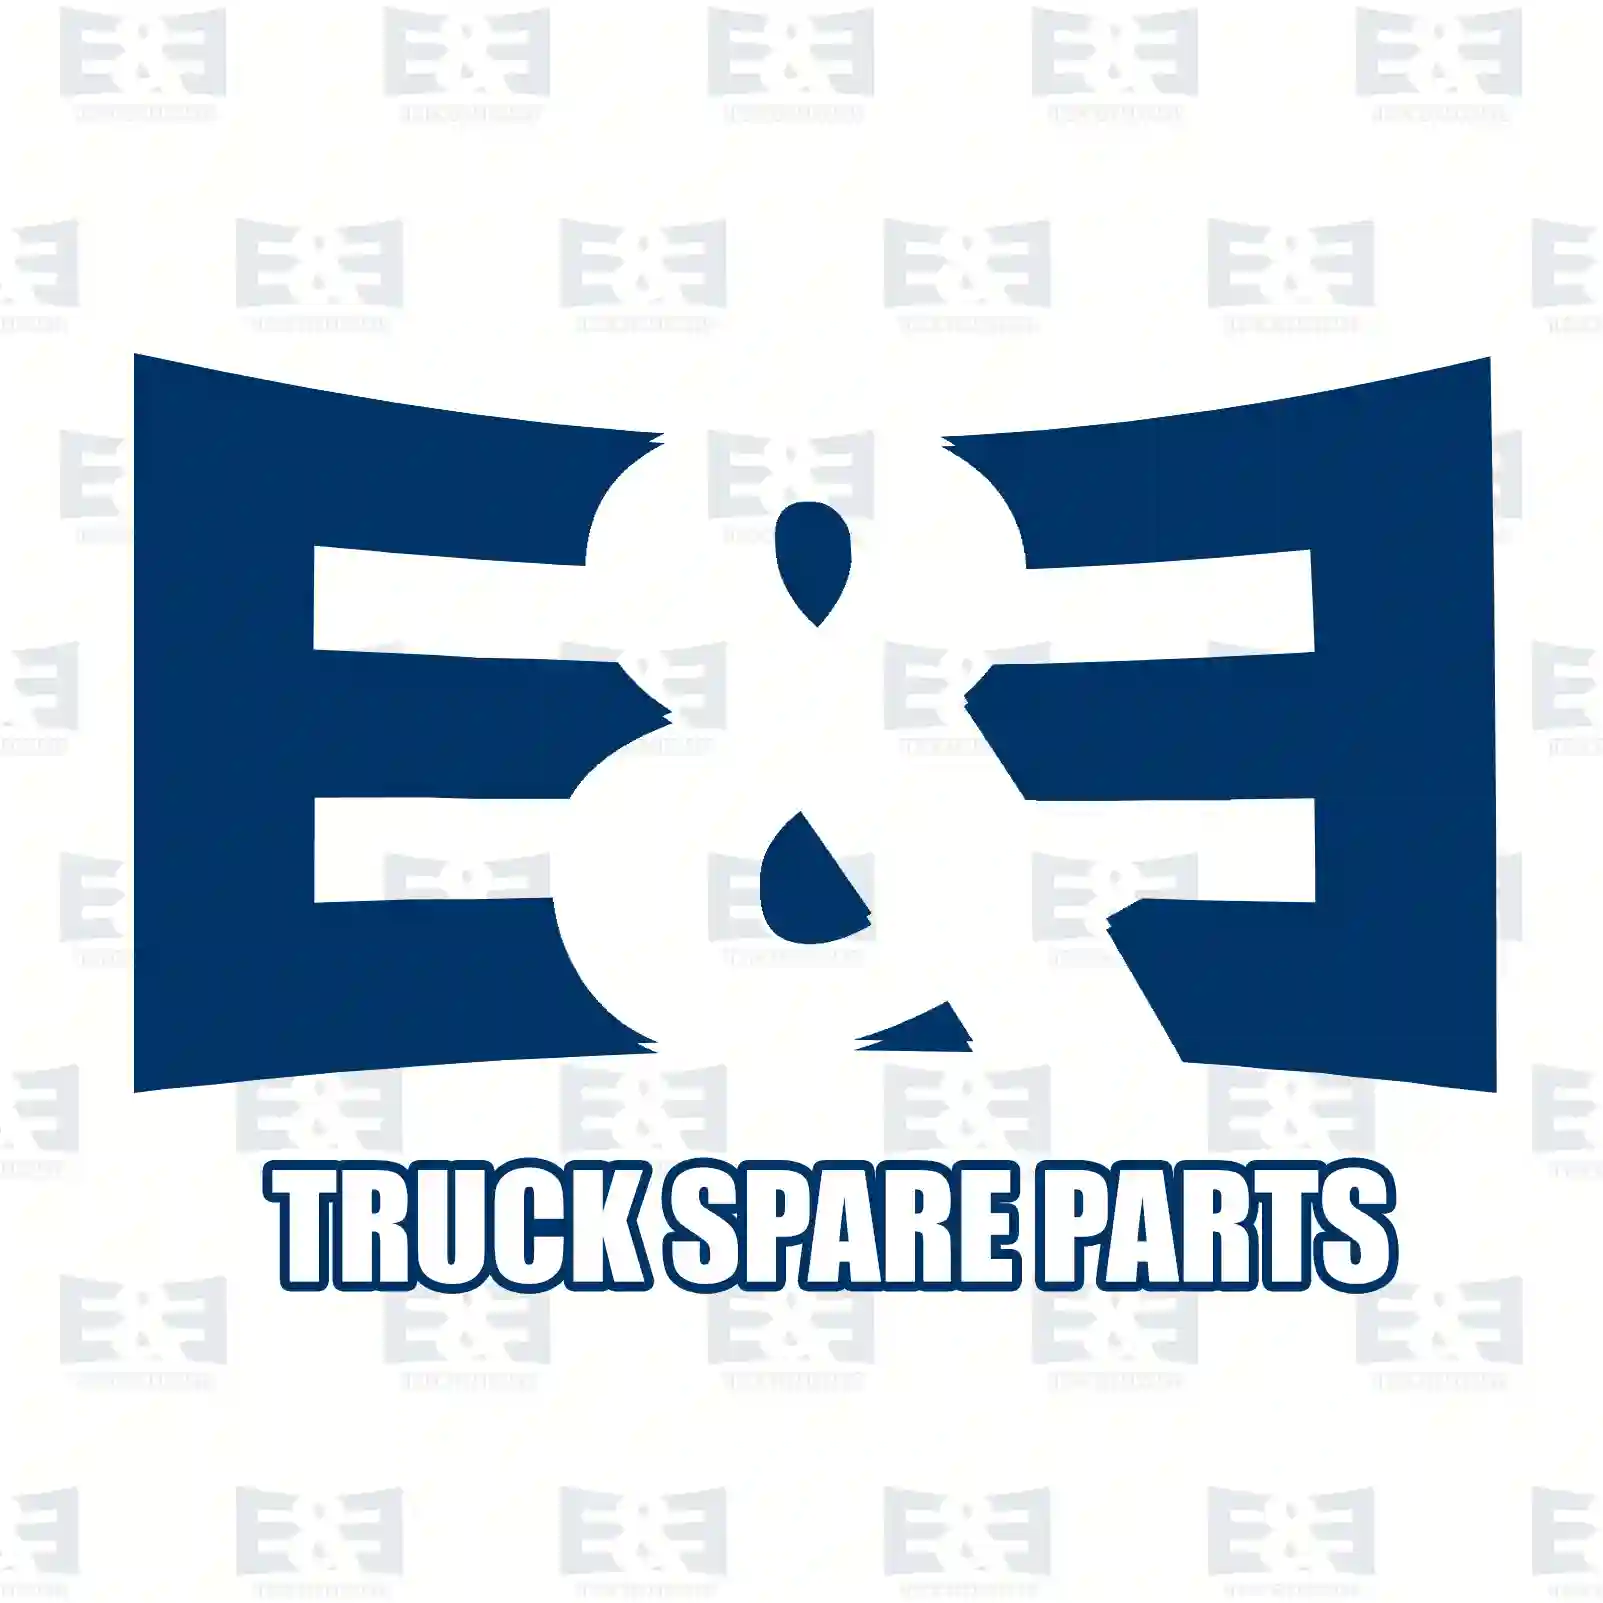 Gear shift lever valve, 2E2278509, 0002605057, 0012601957, 3852600357 ||  2E2278509 E&E Truck Spare Parts | Truck Spare Parts, Auotomotive Spare Parts Gear shift lever valve, 2E2278509, 0002605057, 0012601957, 3852600357 ||  2E2278509 E&E Truck Spare Parts | Truck Spare Parts, Auotomotive Spare Parts